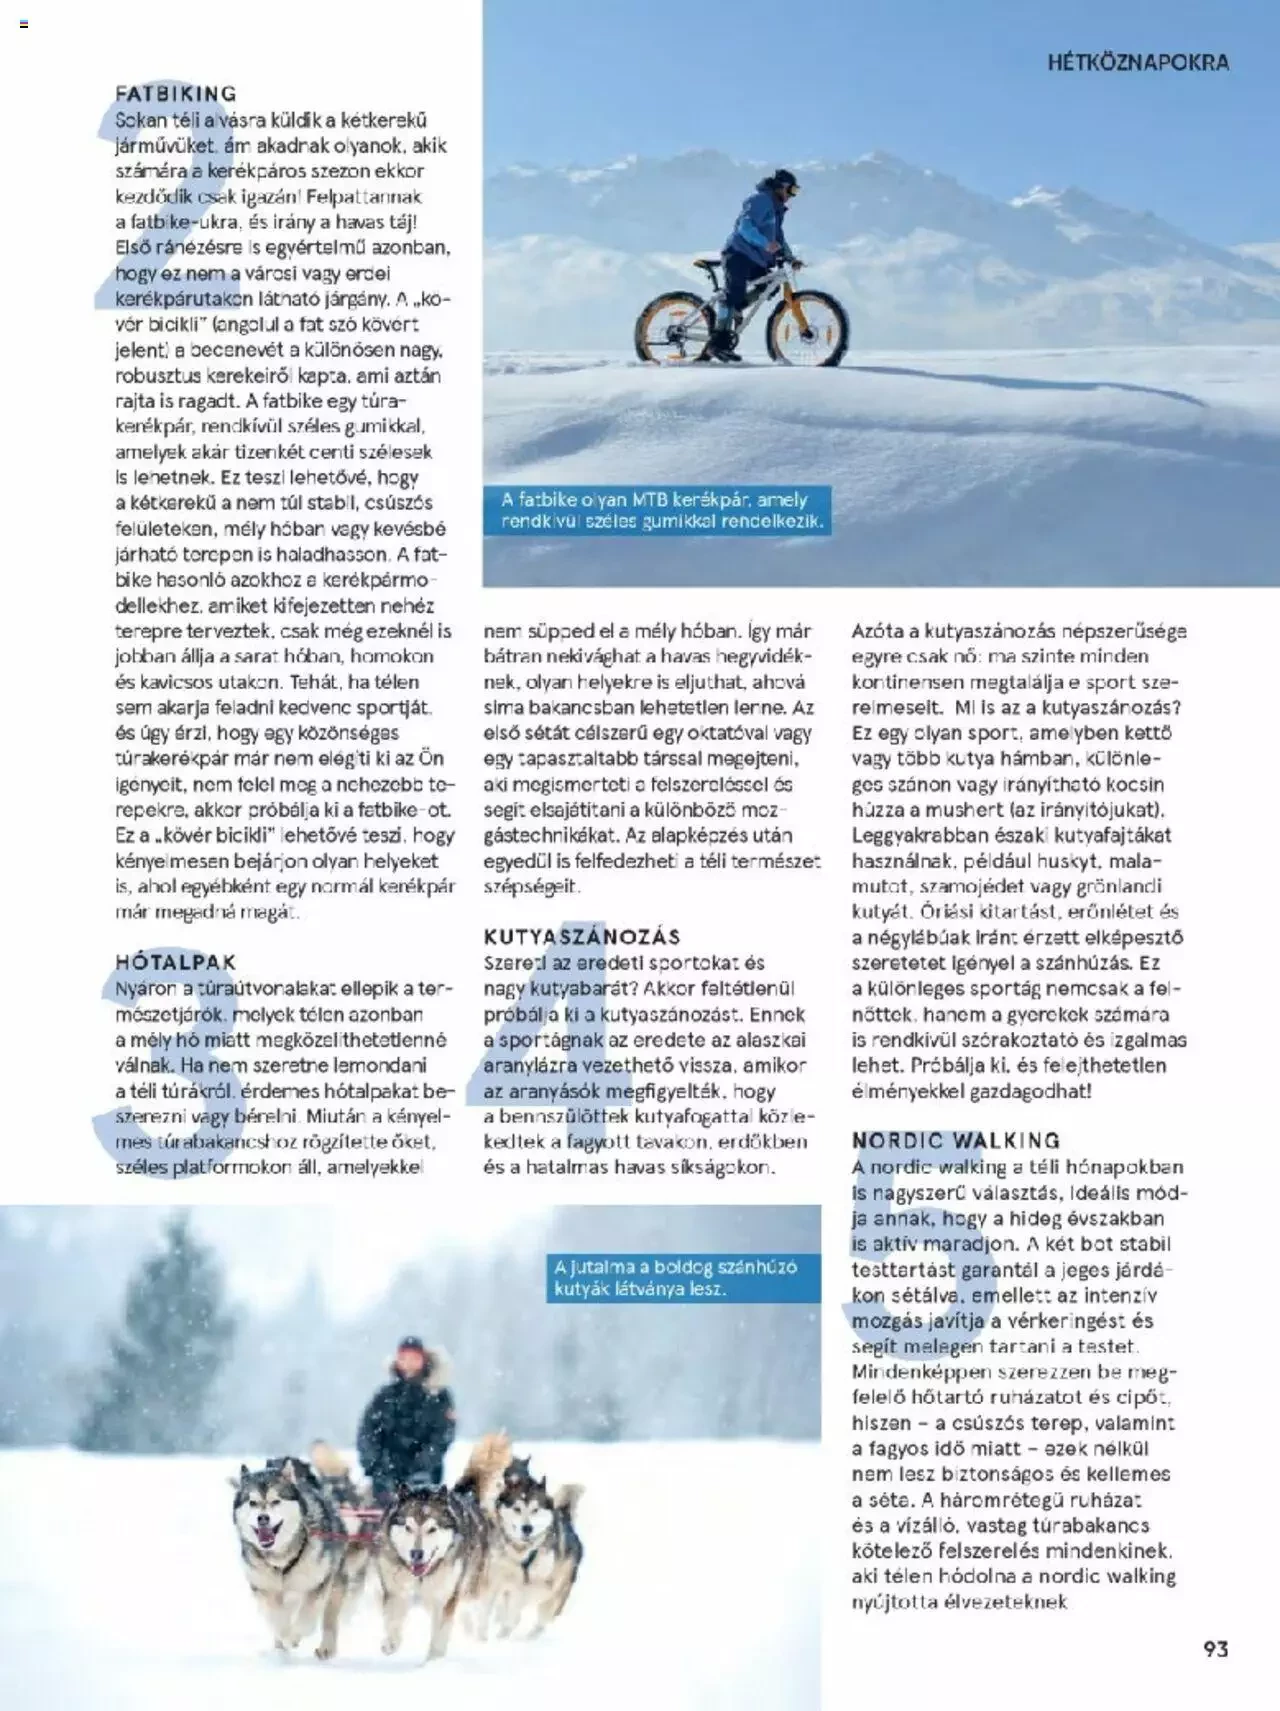 Tesco - Magazin Tél - 93. oldal